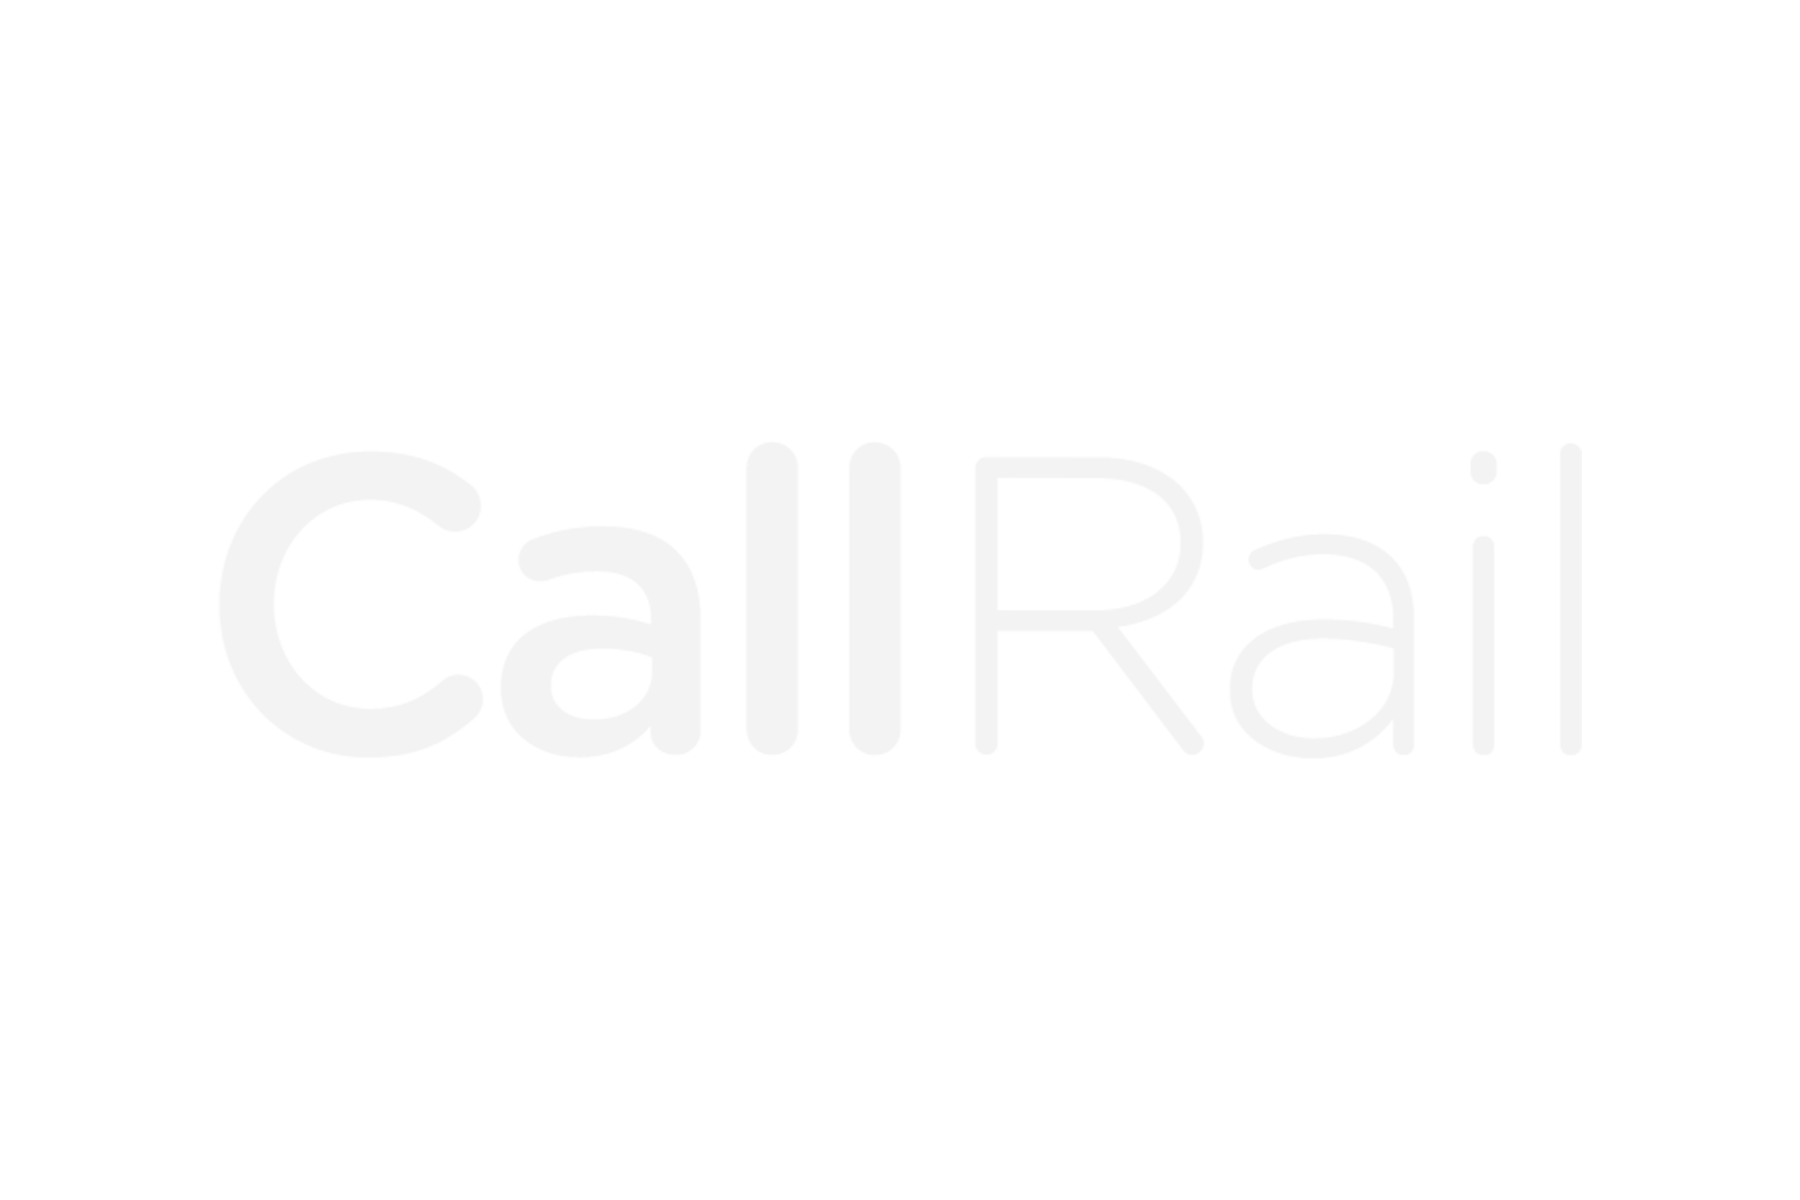 Call Rail (Copy) (Copy)